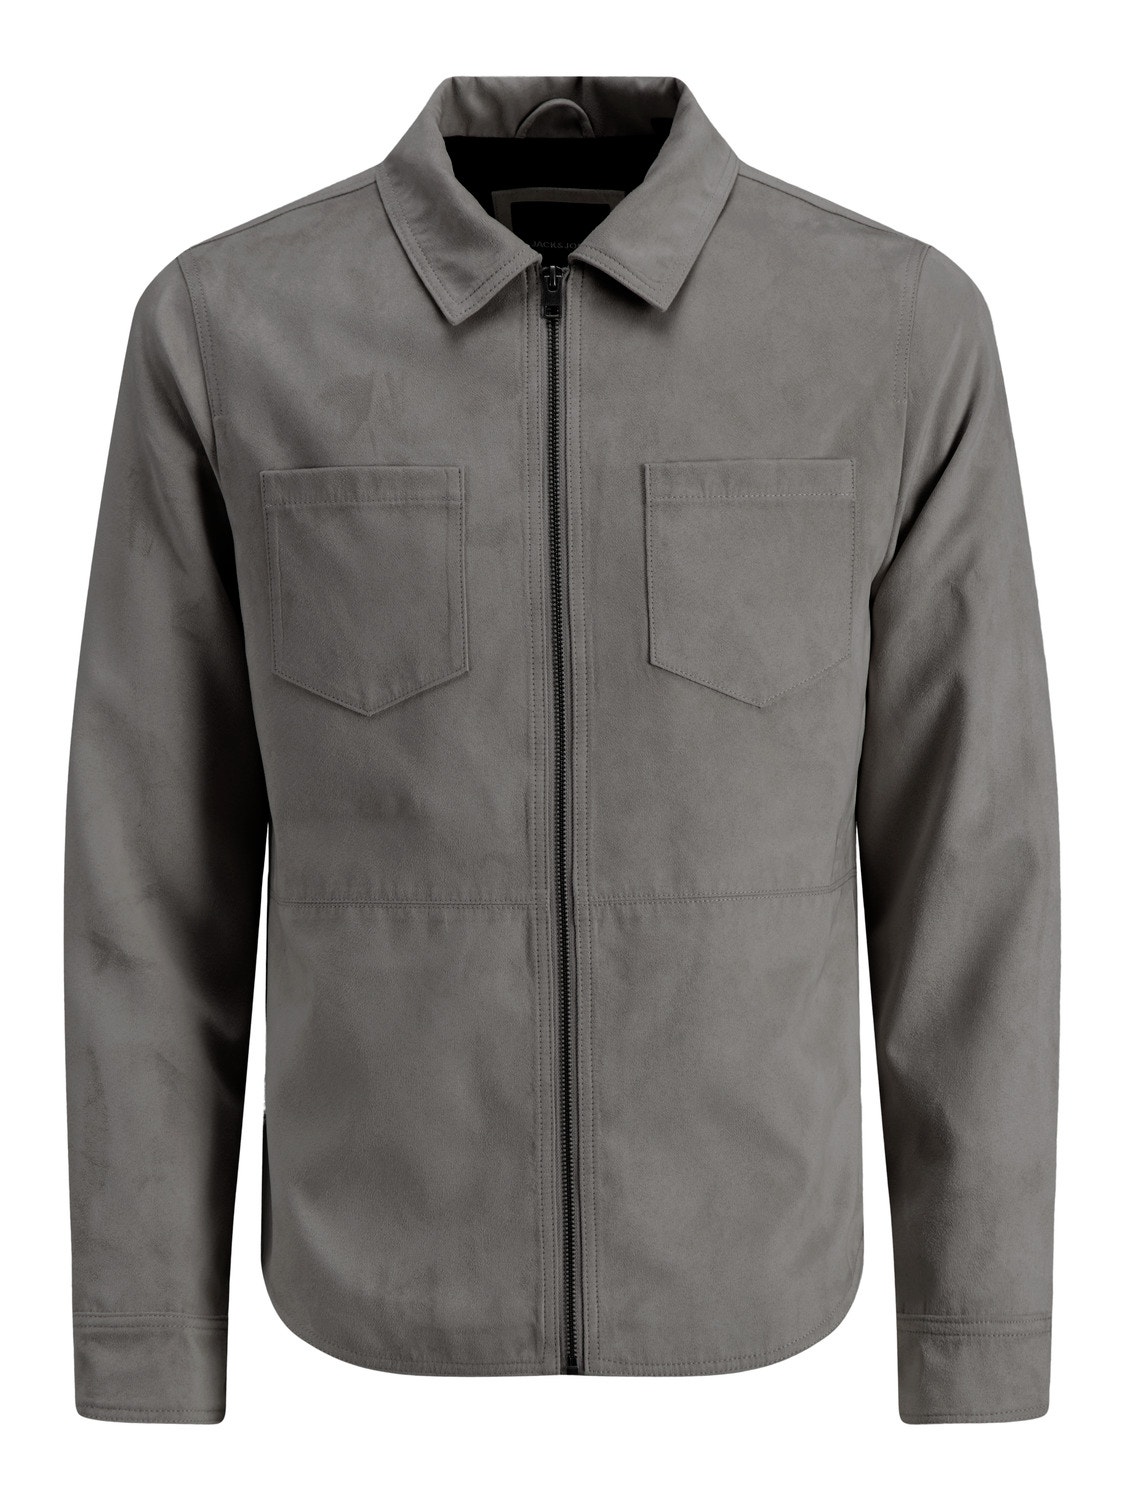 Jack & Jones Hybrid jacket -Sedona Sage - 12188637